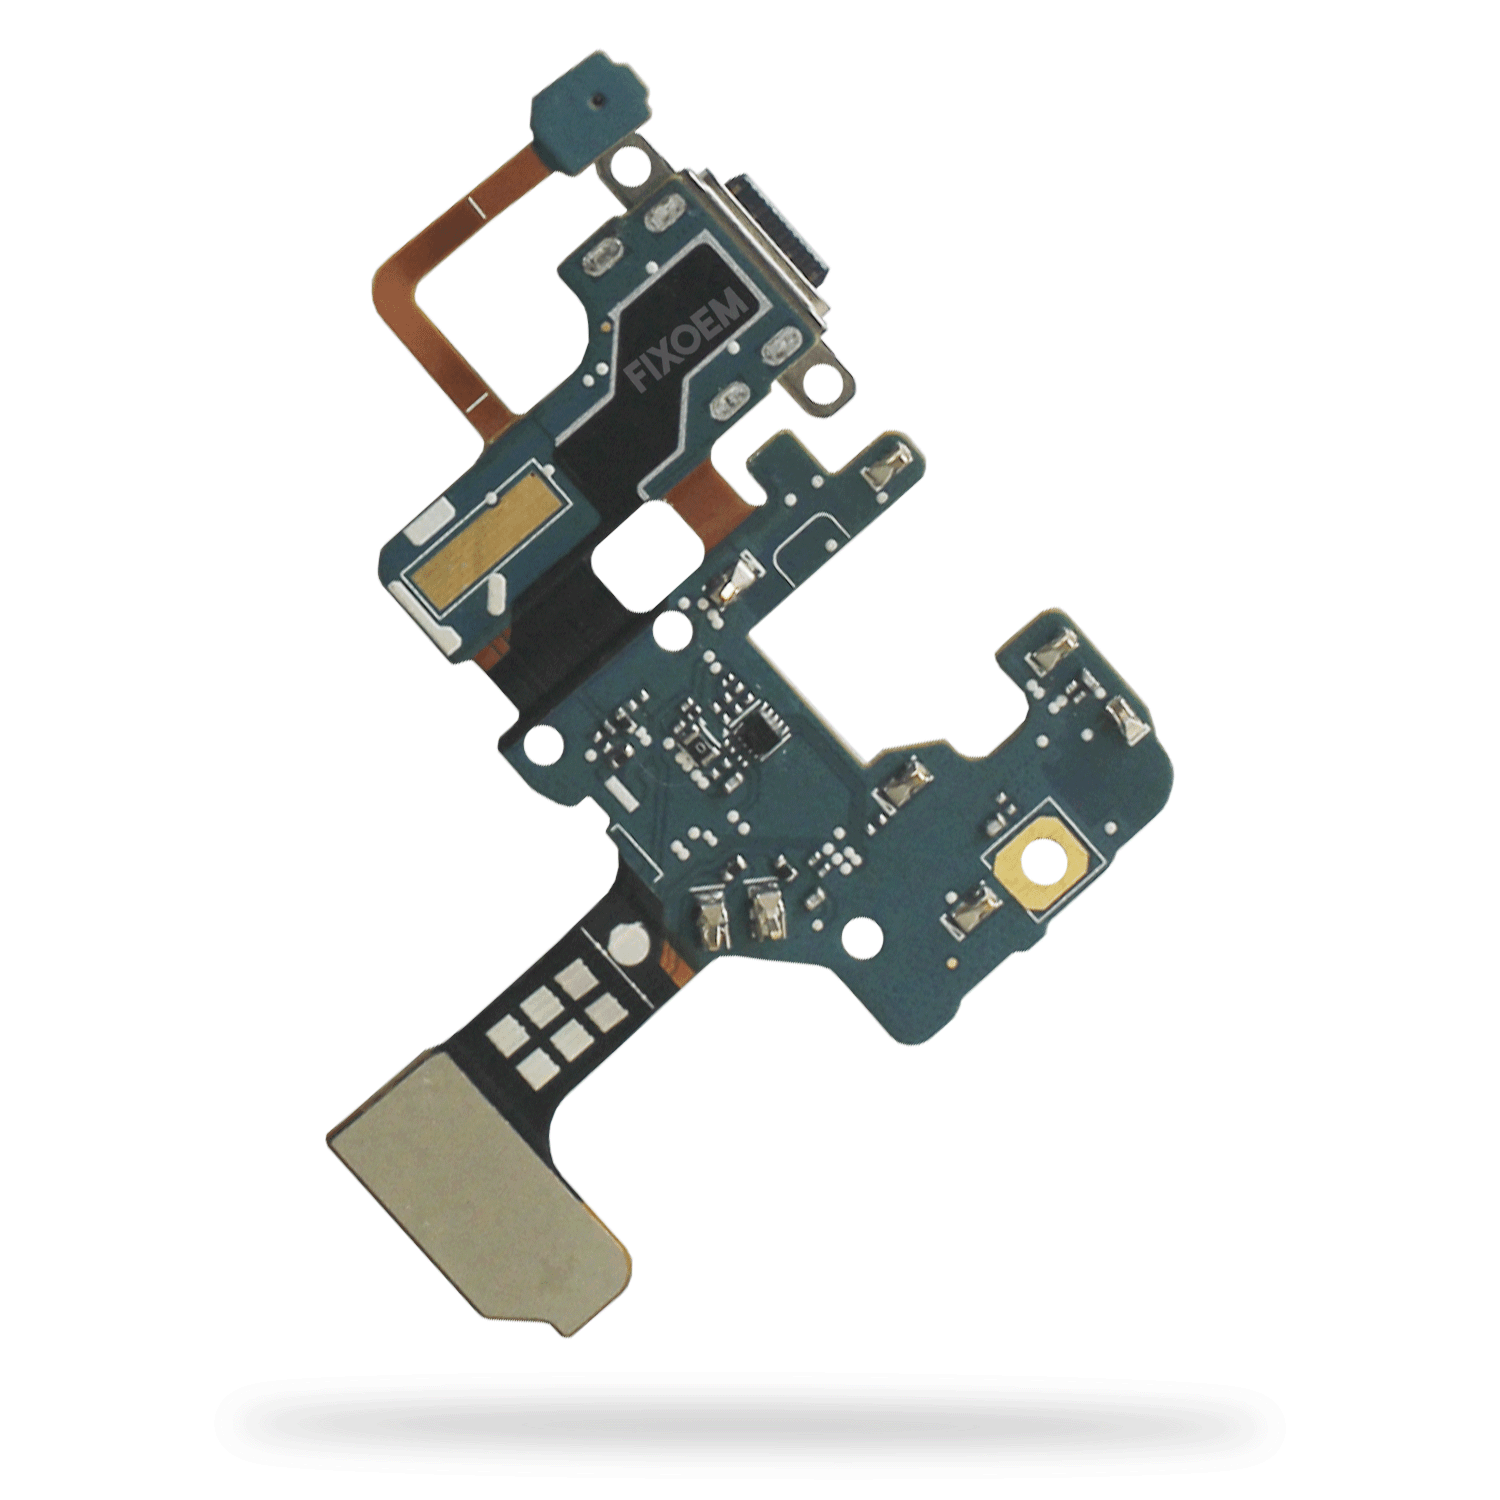 Centro Carga Samsung Note 8 Version F N950F. a solo $ 150.00 Refaccion y puestos celulares, refurbish y microelectronica.- FixOEM